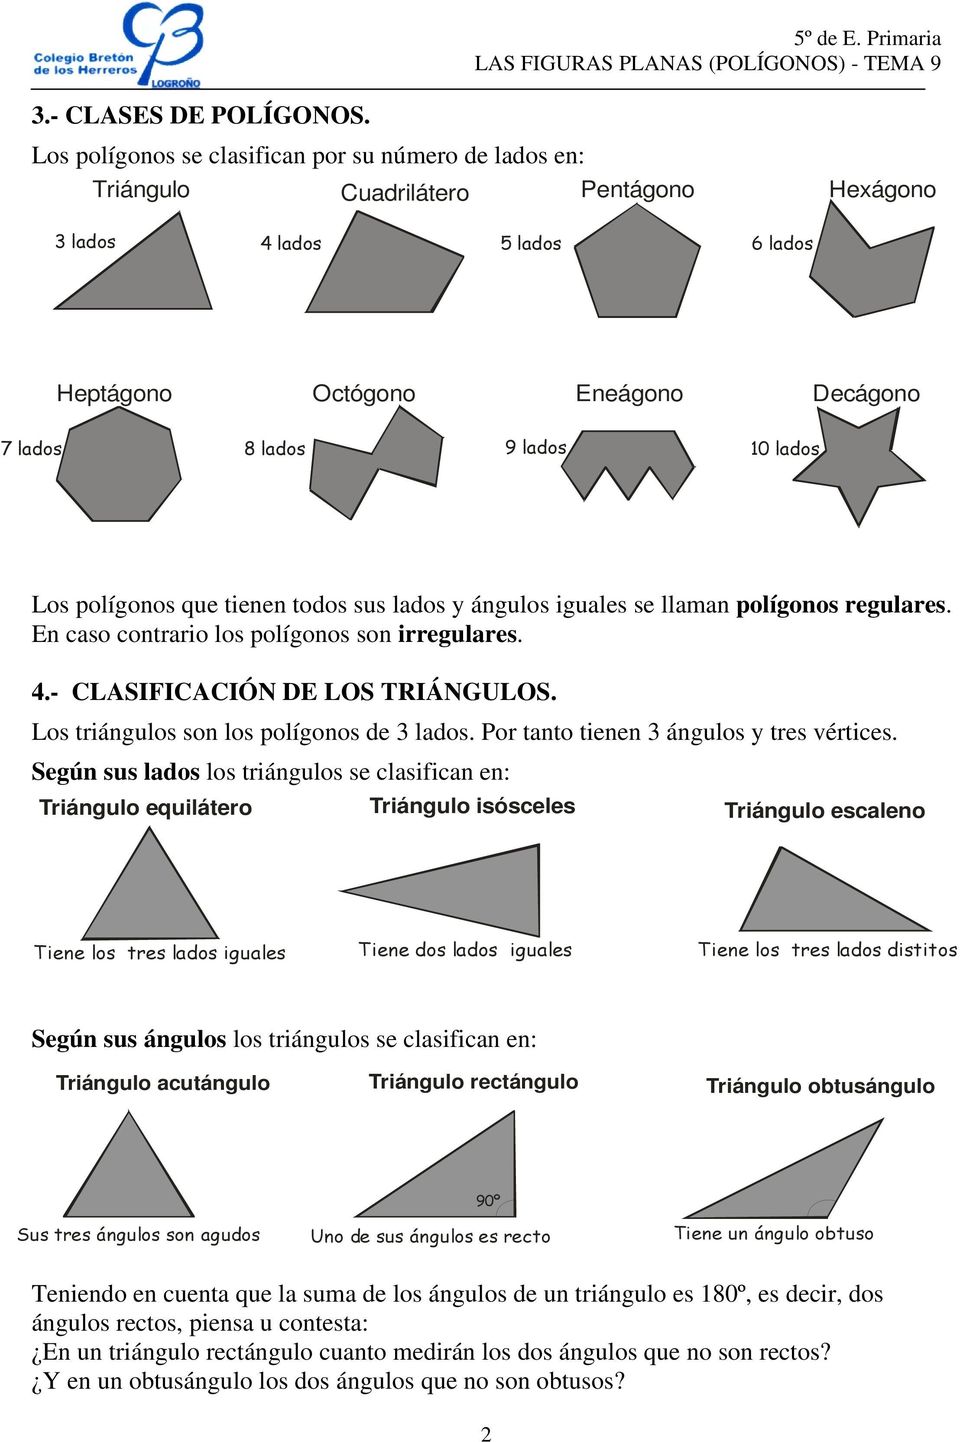 Los polígonos que tienen todos sus lados y ángulos iguales se llaman polígonos regulares. En caso contrario los polígonos son irregulares. 4.- CLASIFICACIÓN DE LOS TRIÁNGULOS.